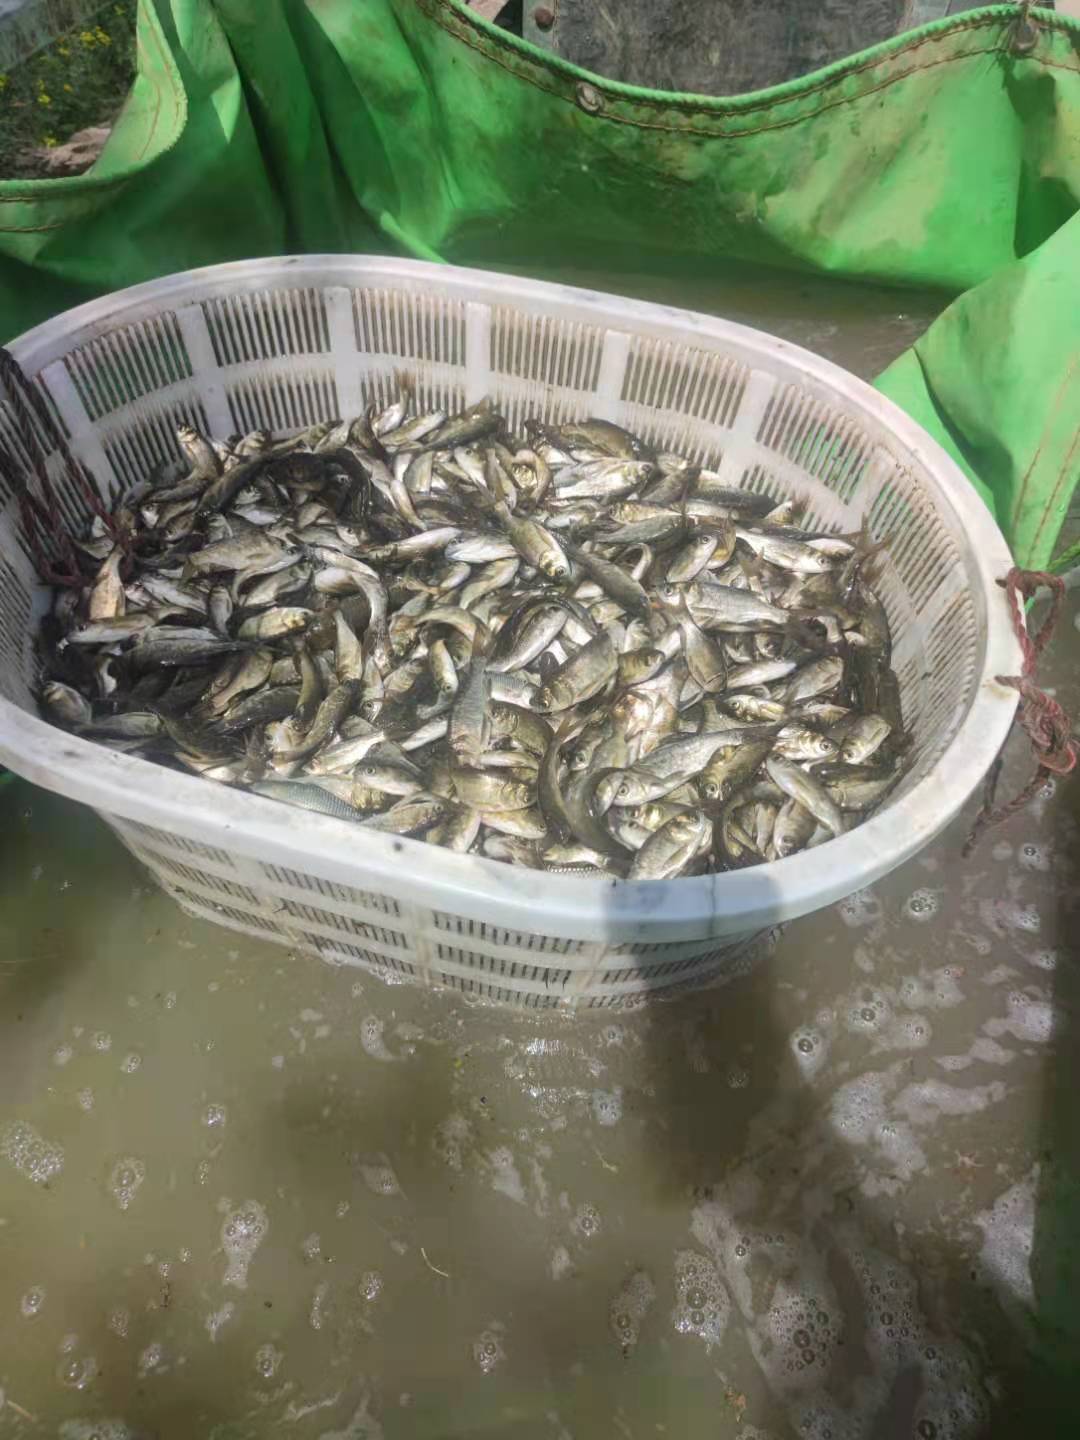 郑州模范渔场 供应鲤鱼苗 草鱼苗 白